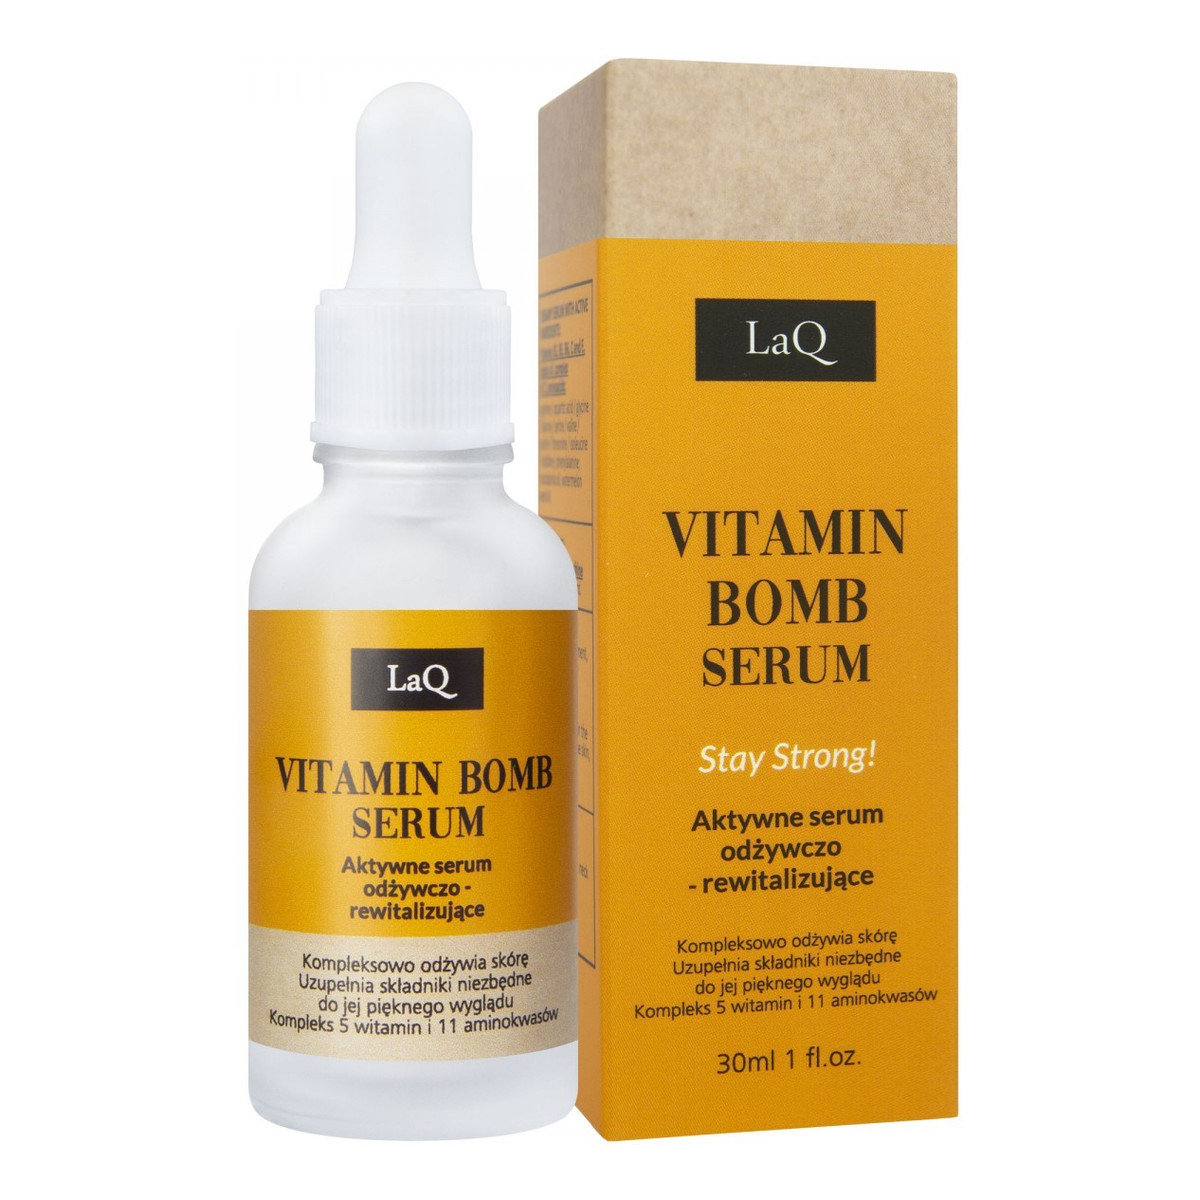 Laq Vitamin Bomb Aktywne Serum odżywczo-rewitalizujące Stay Strong! 30ml